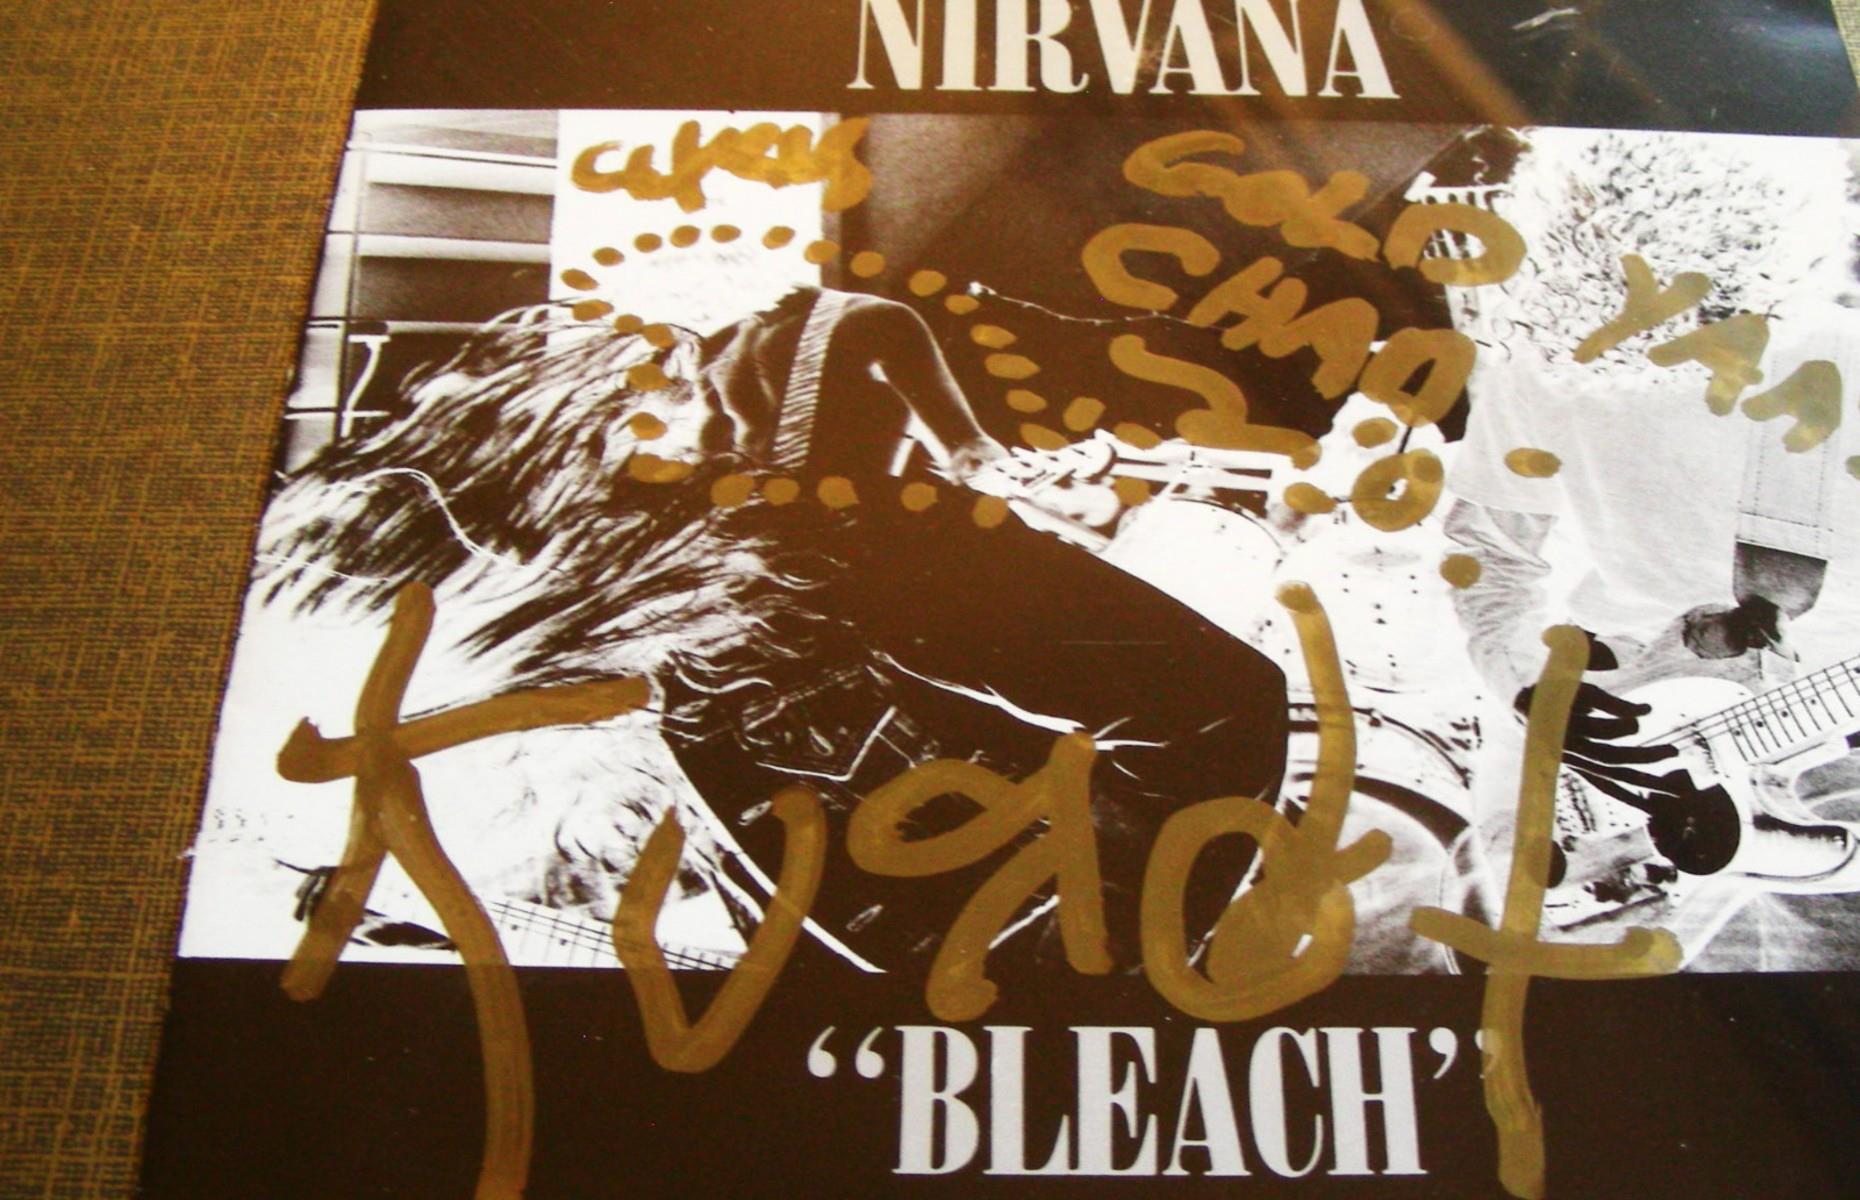 Identifying a fake Kurt Cobain autograph